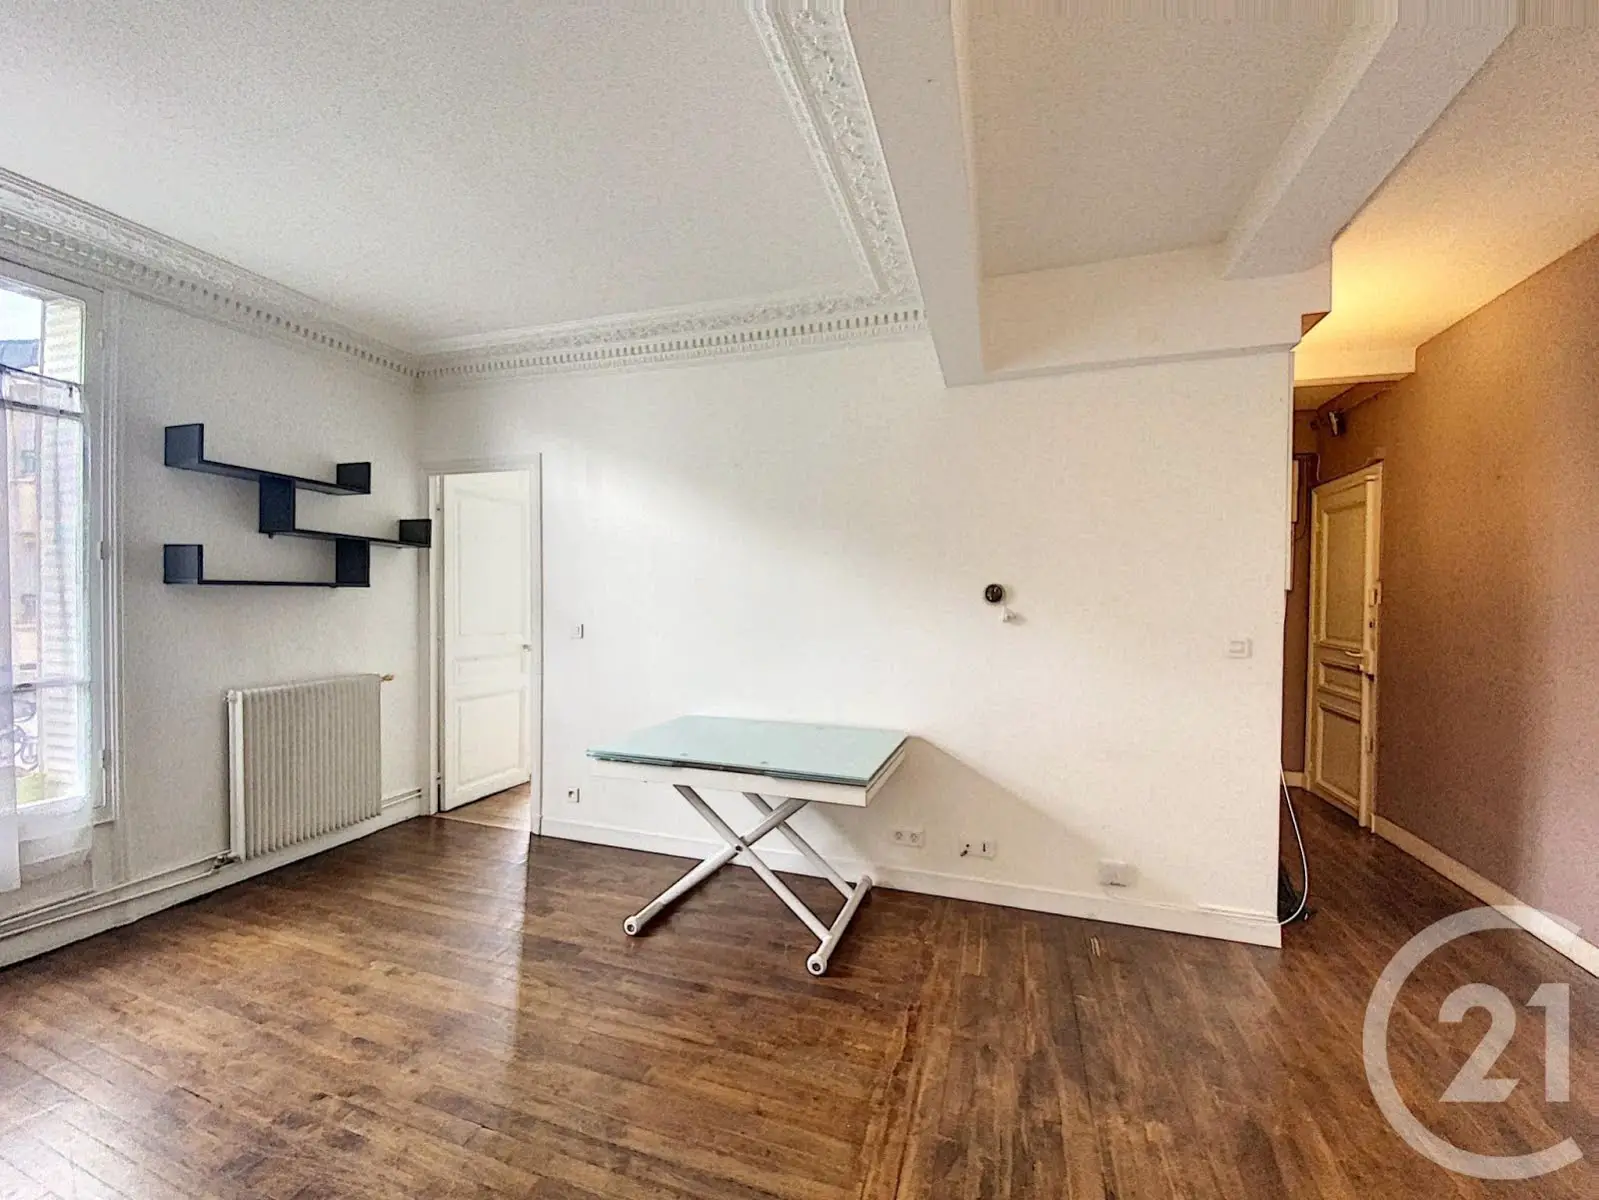 Location appartement meublé 3 pièces 54,7 m2